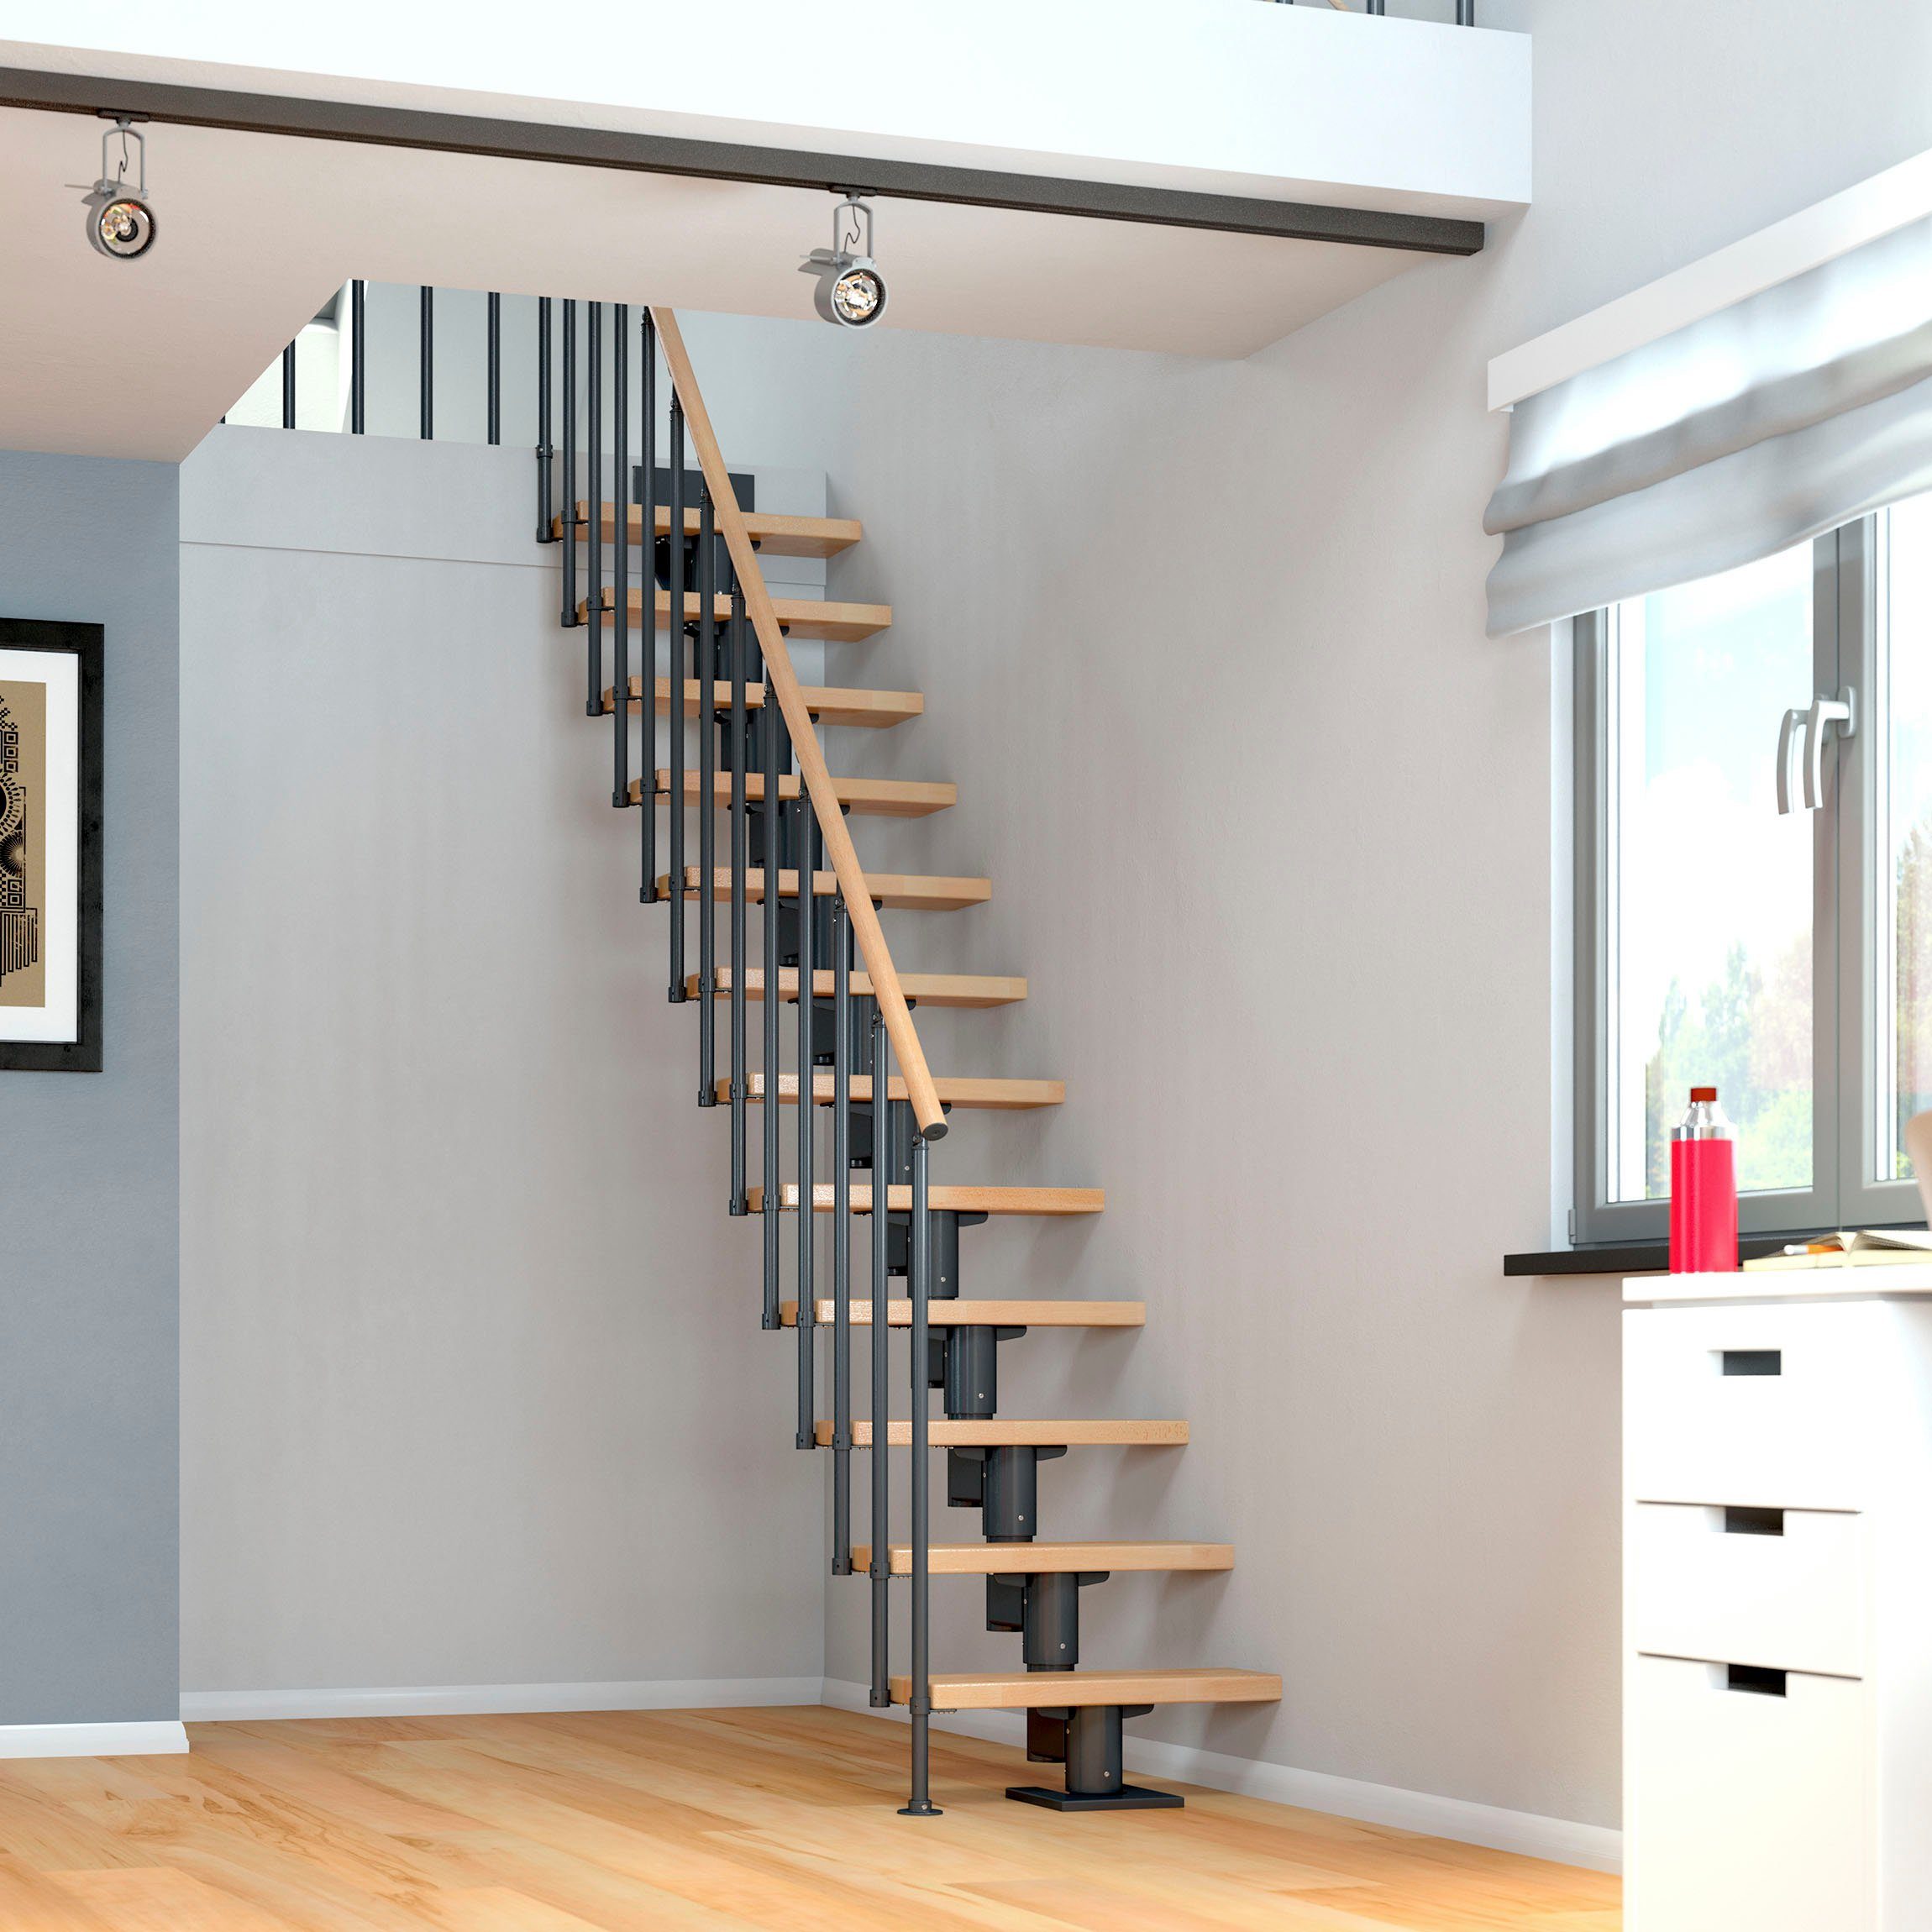 Dolle Mittelholmtreppe Dublin, für Geschosshöhen Stufen bis Buche/Metall offen, 315 cm